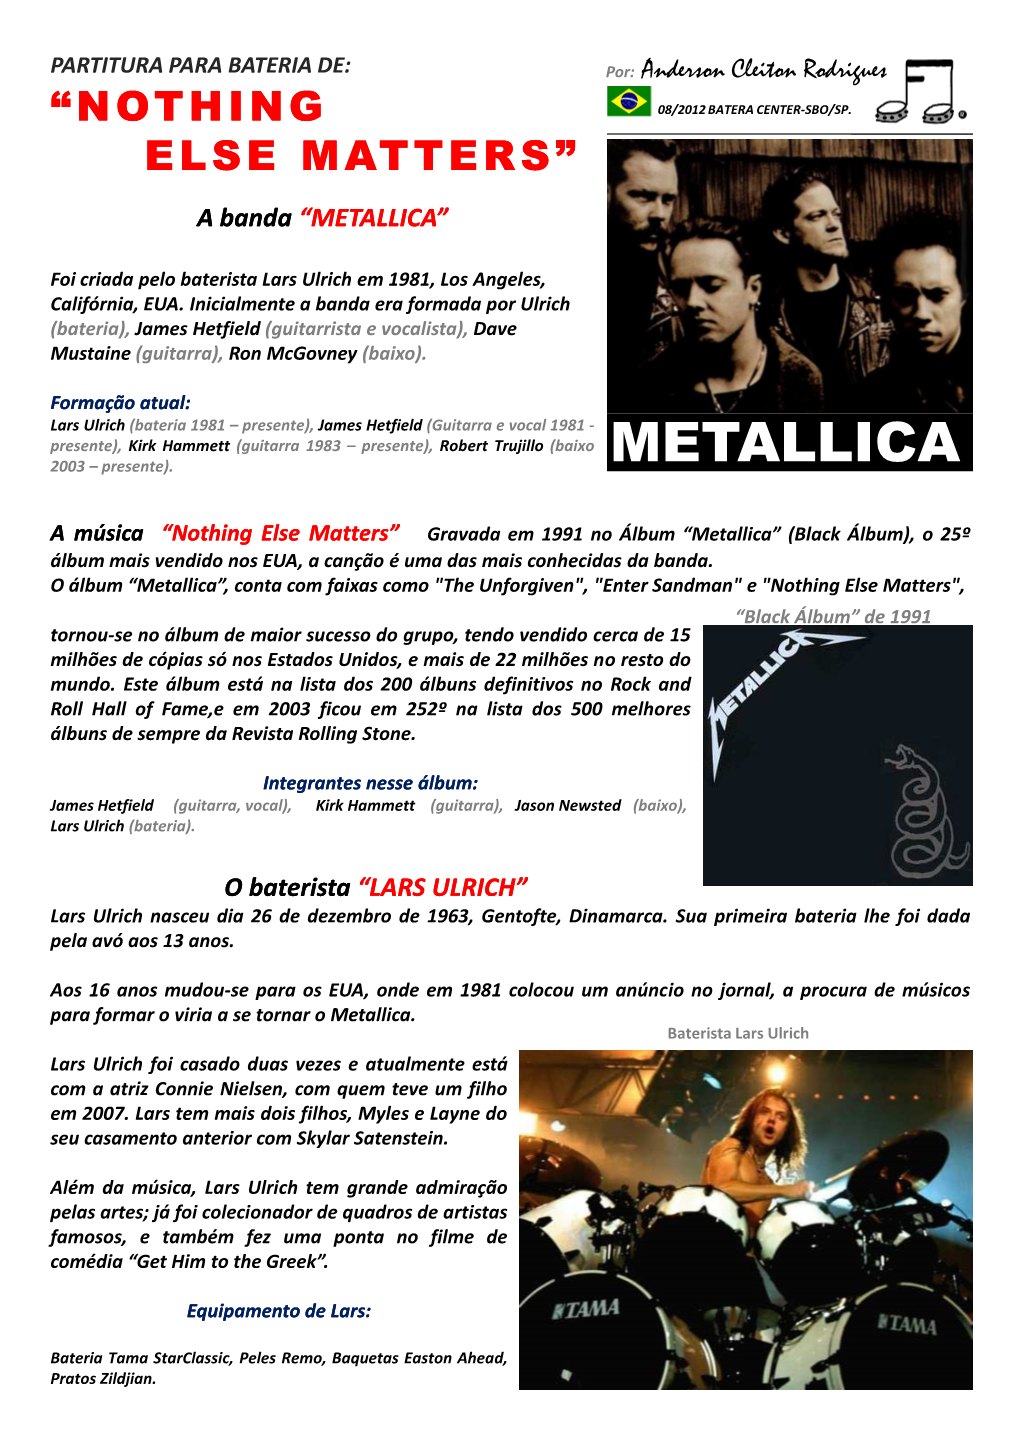 Metallica“Metallica””